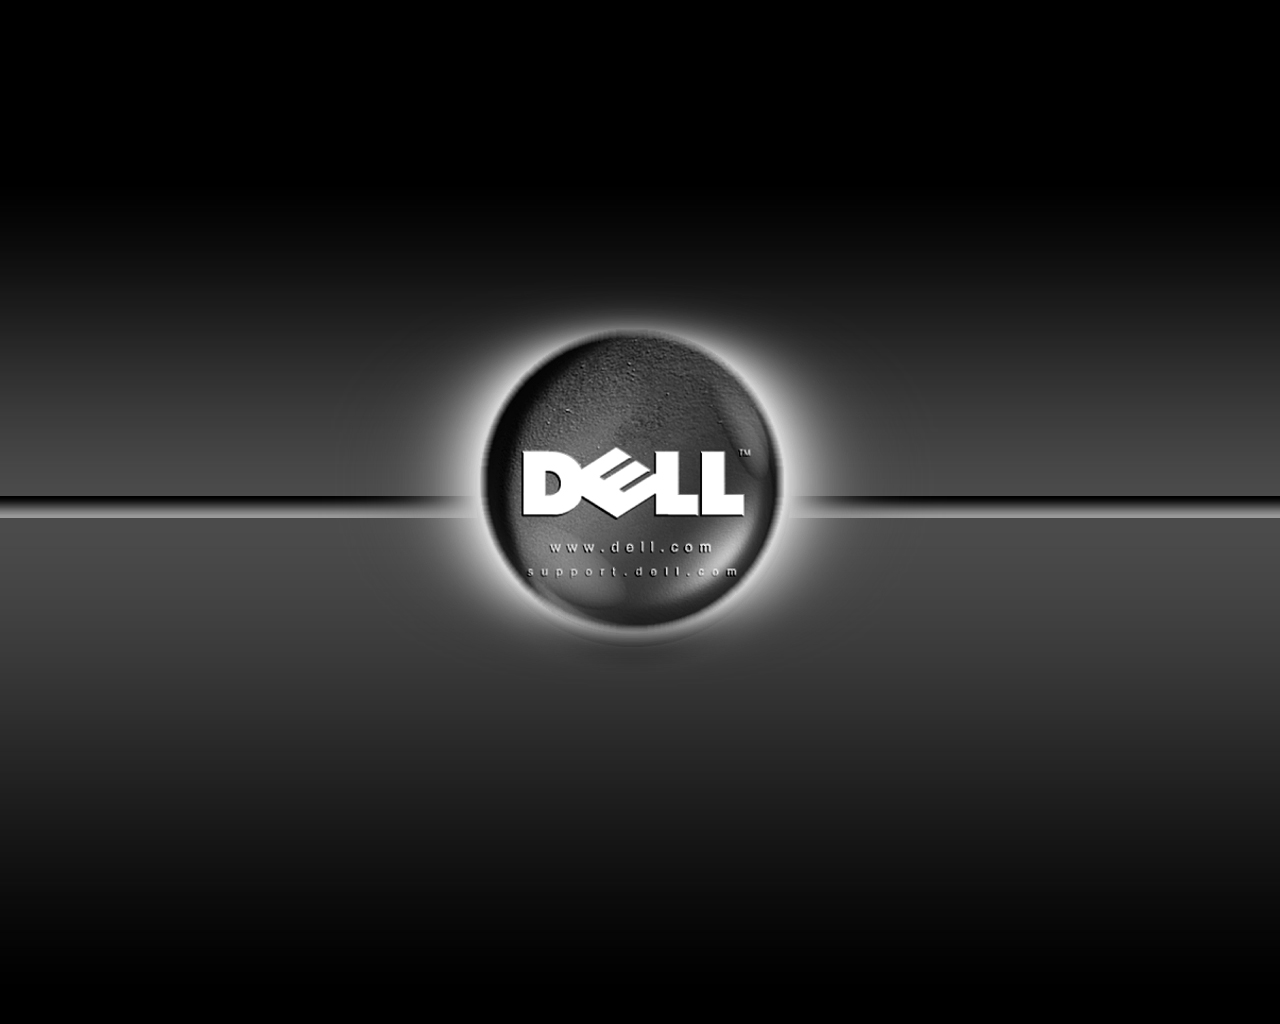 Cách đổi hình nền máy tính Dell đơn giản chỉ với 2 Click chuột